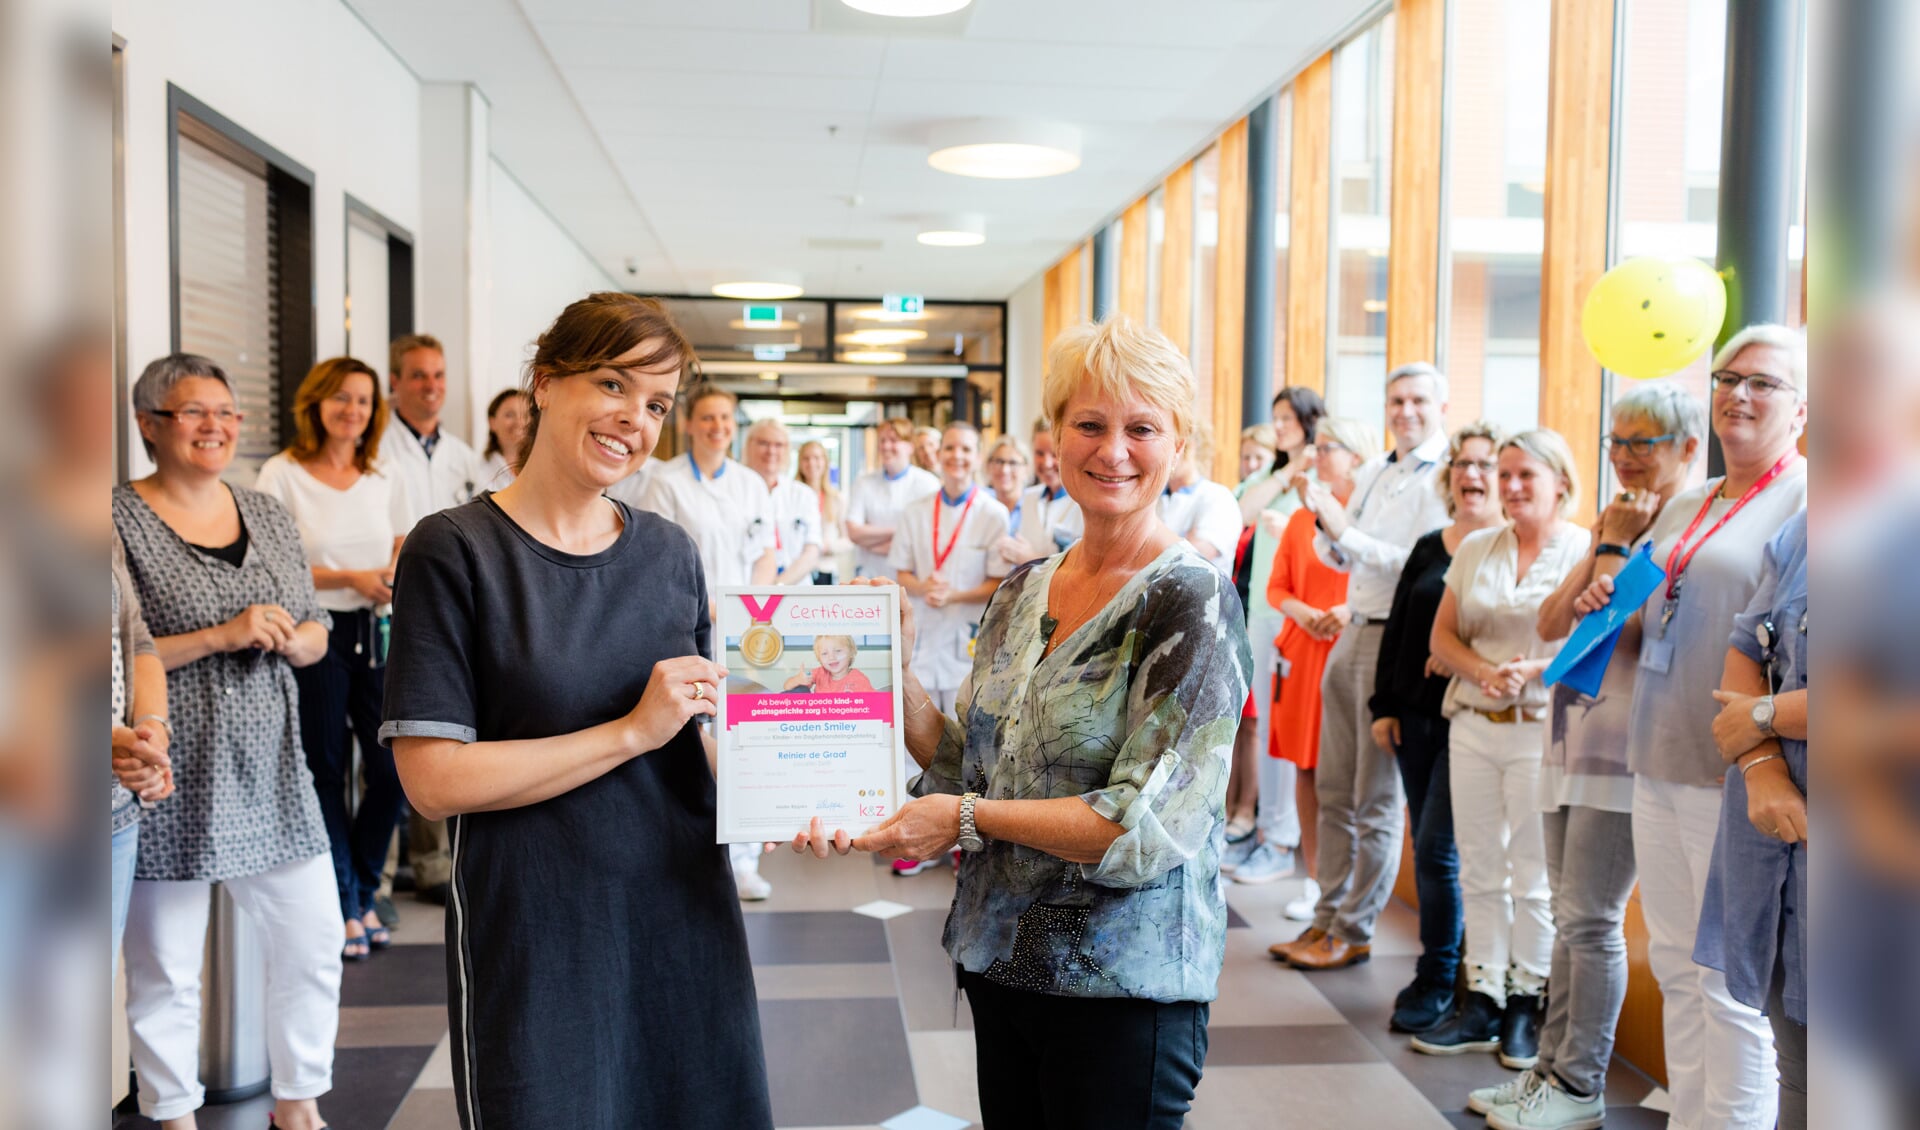 Eva Schmidt-Cnossen van Stichting Kind en Ziekenhuis overhandigt de Gouden Smiley aan Bep Wiessenhaan, hoofd kinder- en jeugdafdeling